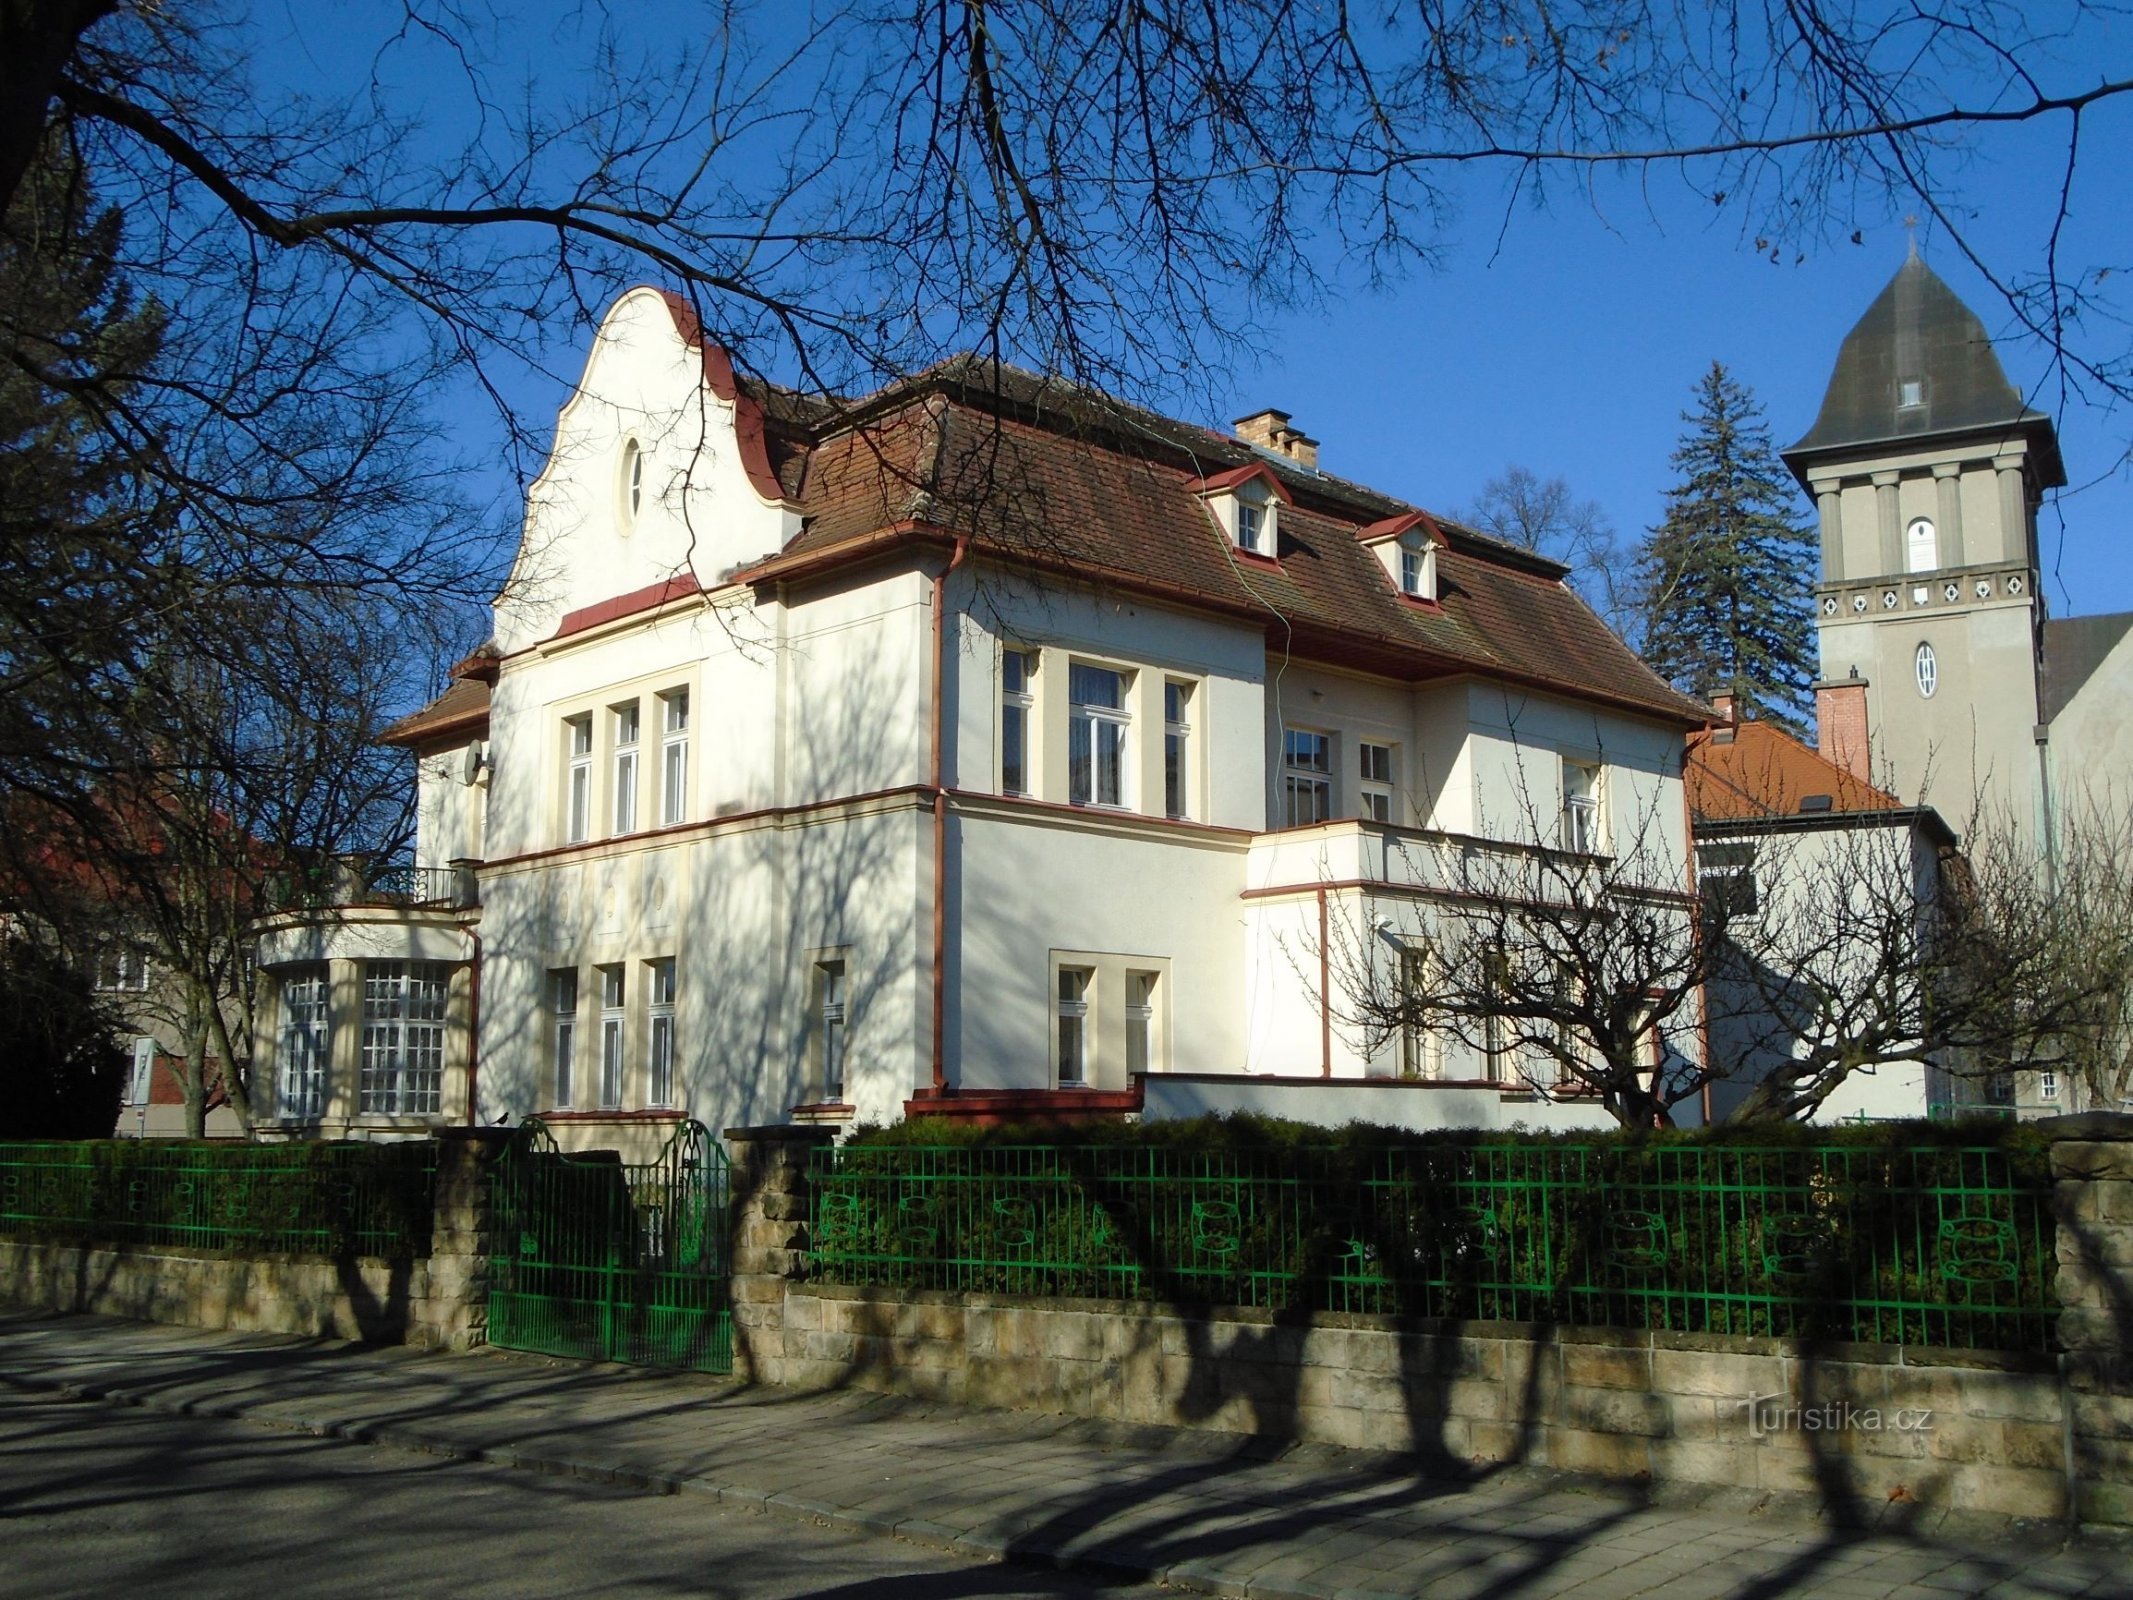 Lâu đài số 545 (Hradec Králové, ngày 7.4.2018 tháng XNUMX năm XNUMX)